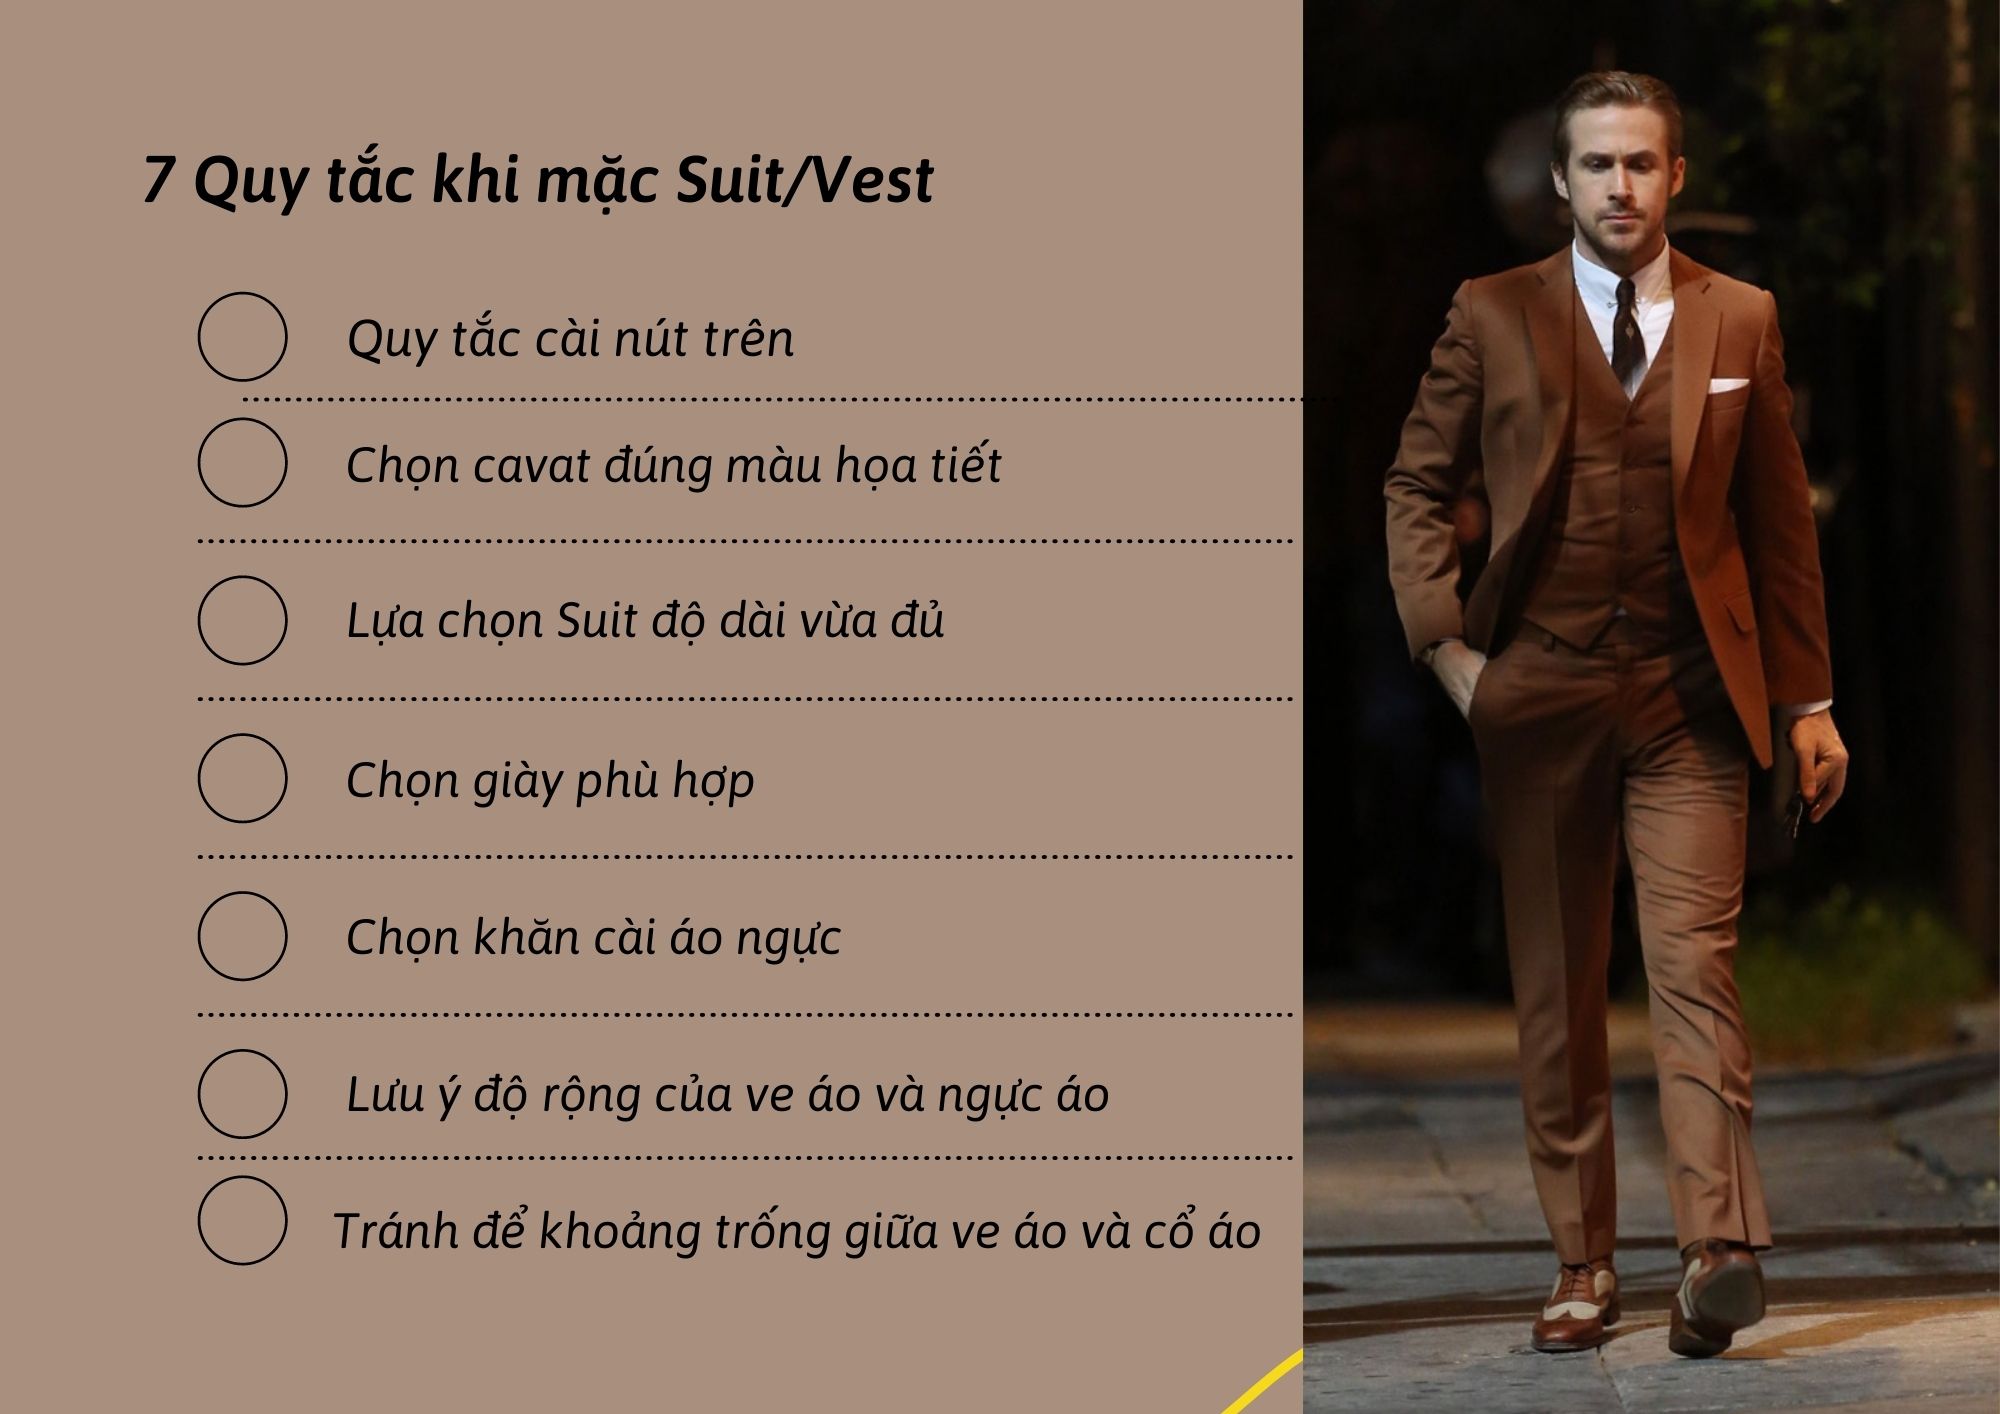 7 Quy tắc khi mặc Suit